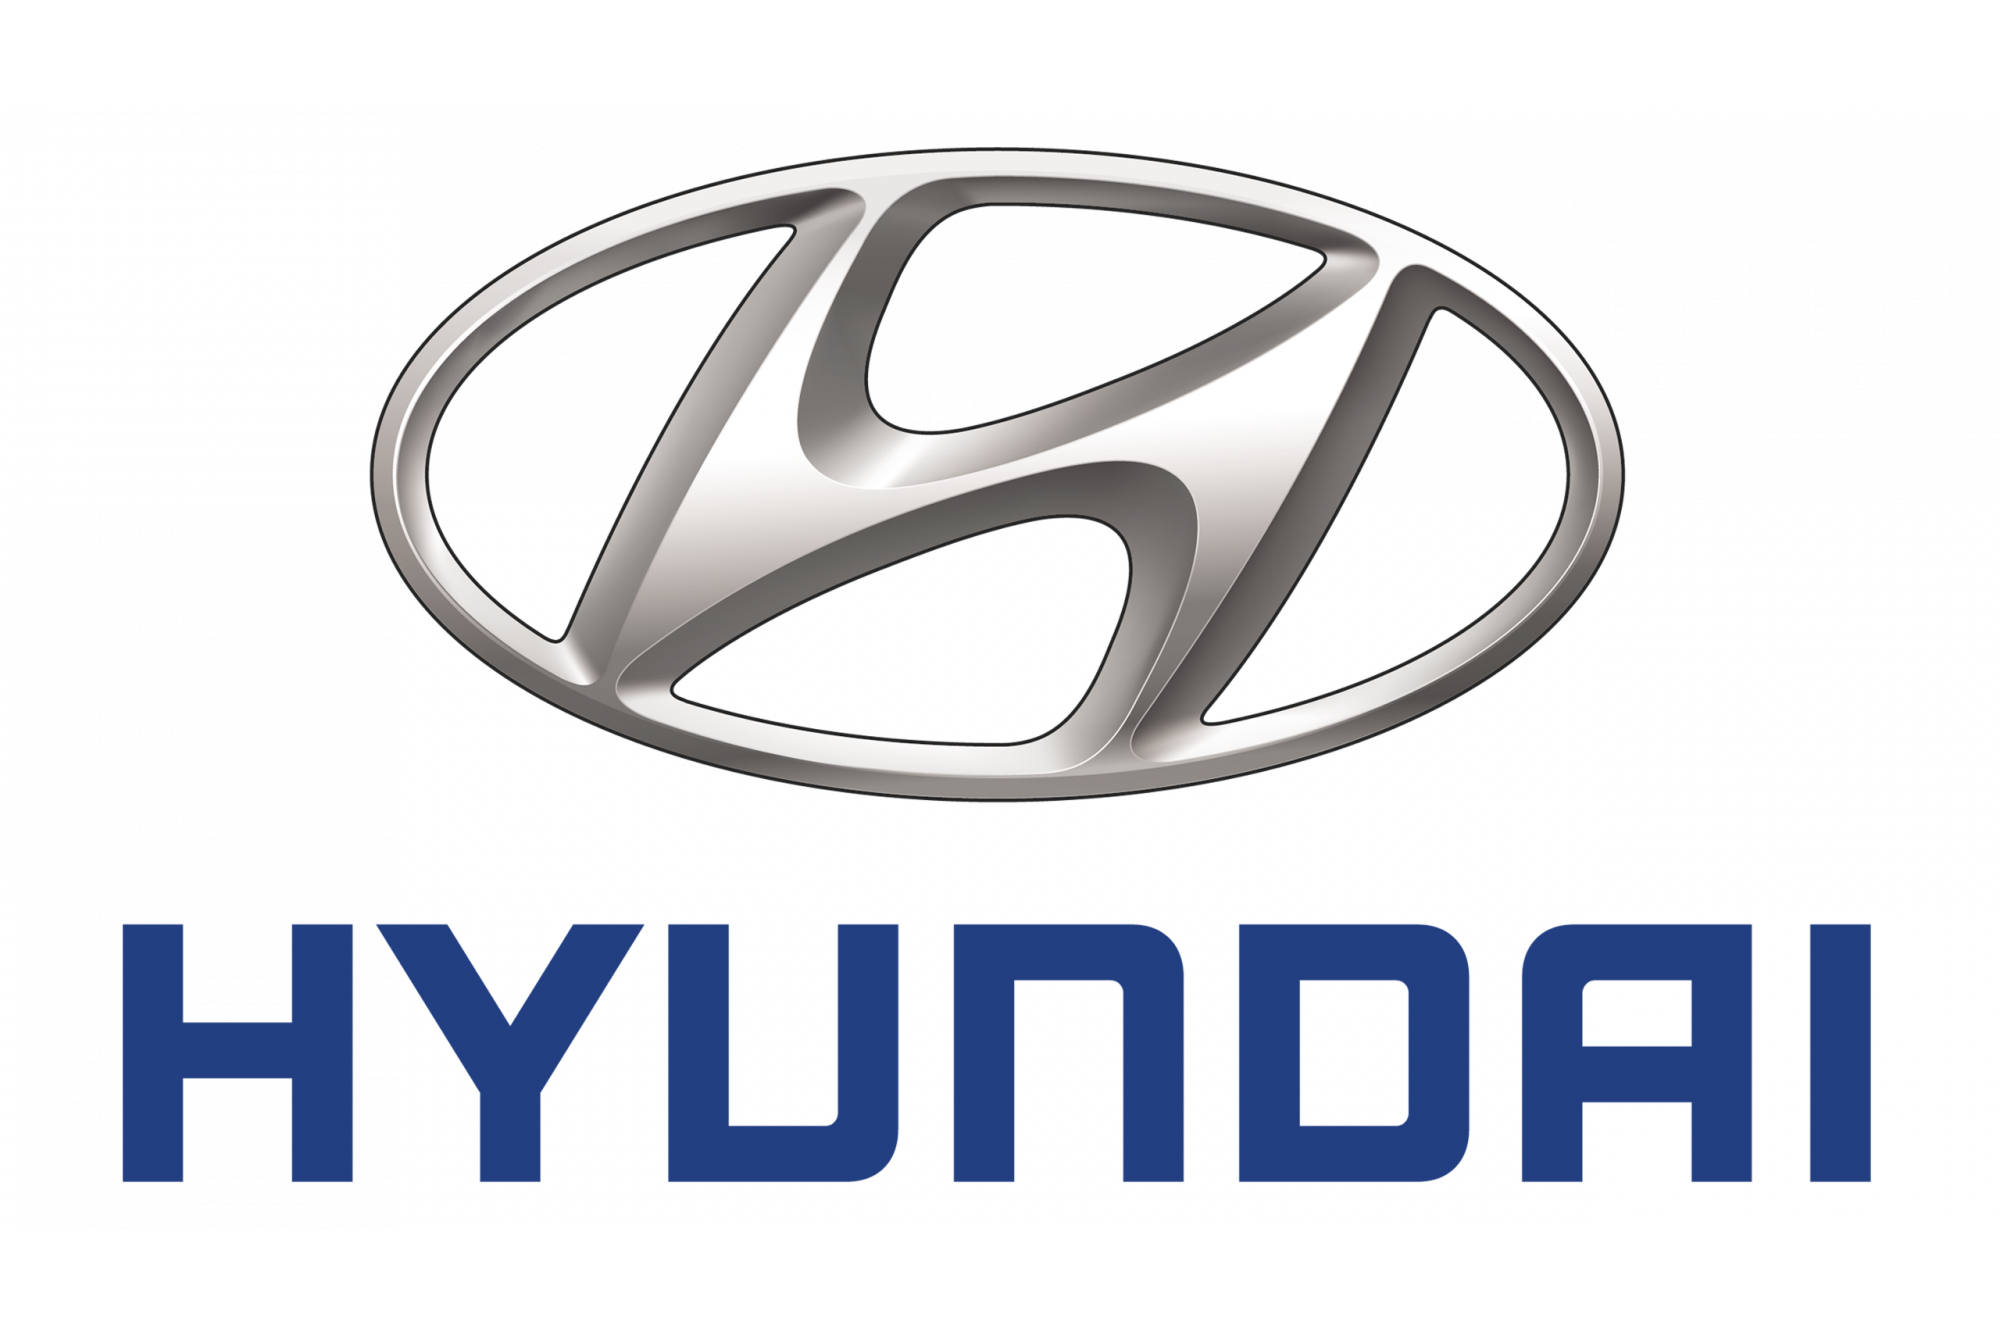 Η Hyundai εκφράζει μία αισιόδοξη υπόσχεση για όλους μας, για το «μετά».